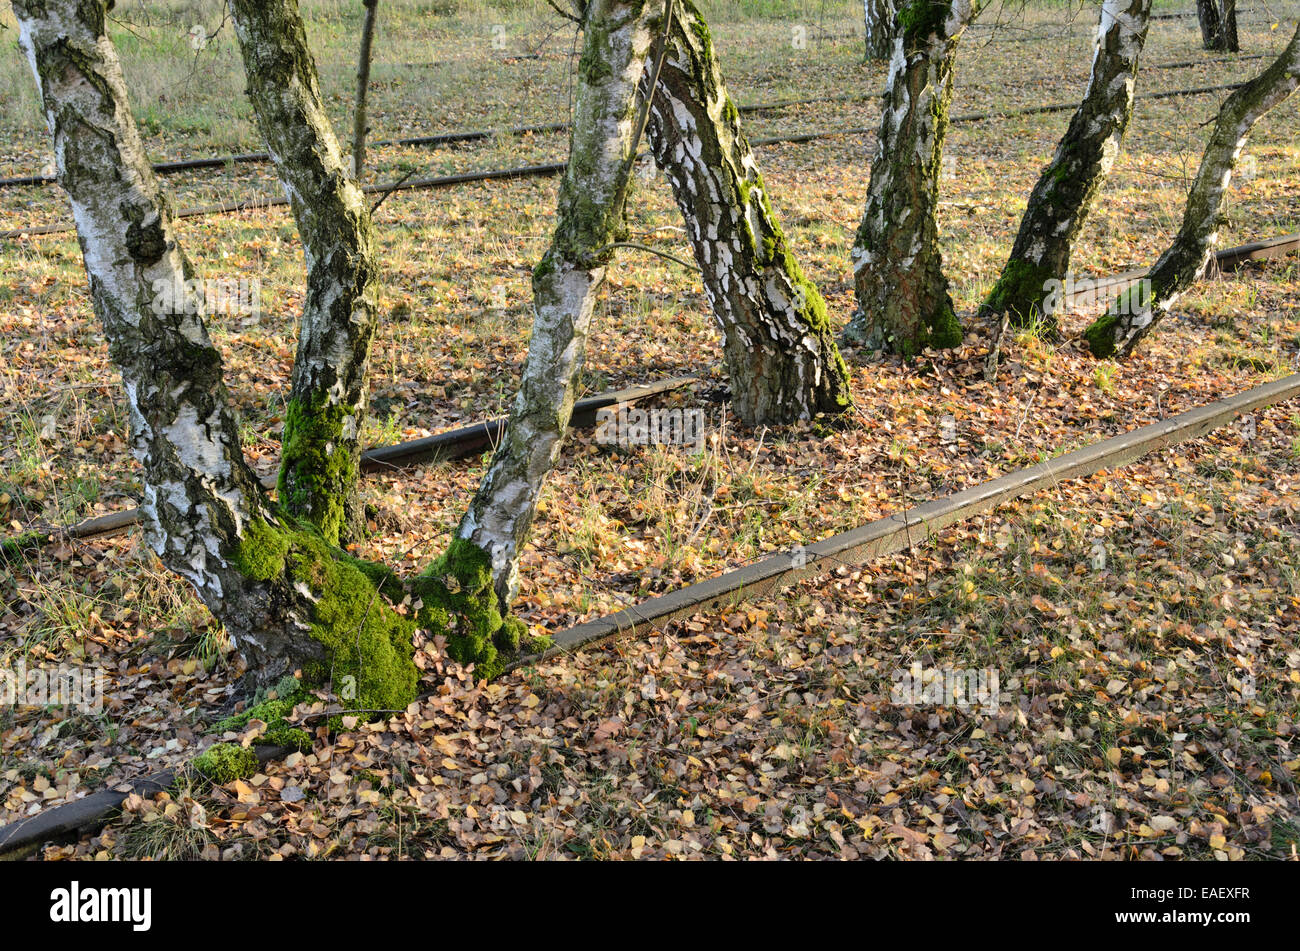 Bouleau blanc européen (Betula pendula) entre les voies sur une voie ferrée abandonnée, schöneberger südgelände réserve naturelle, Berlin, Allemagne Banque D'Images